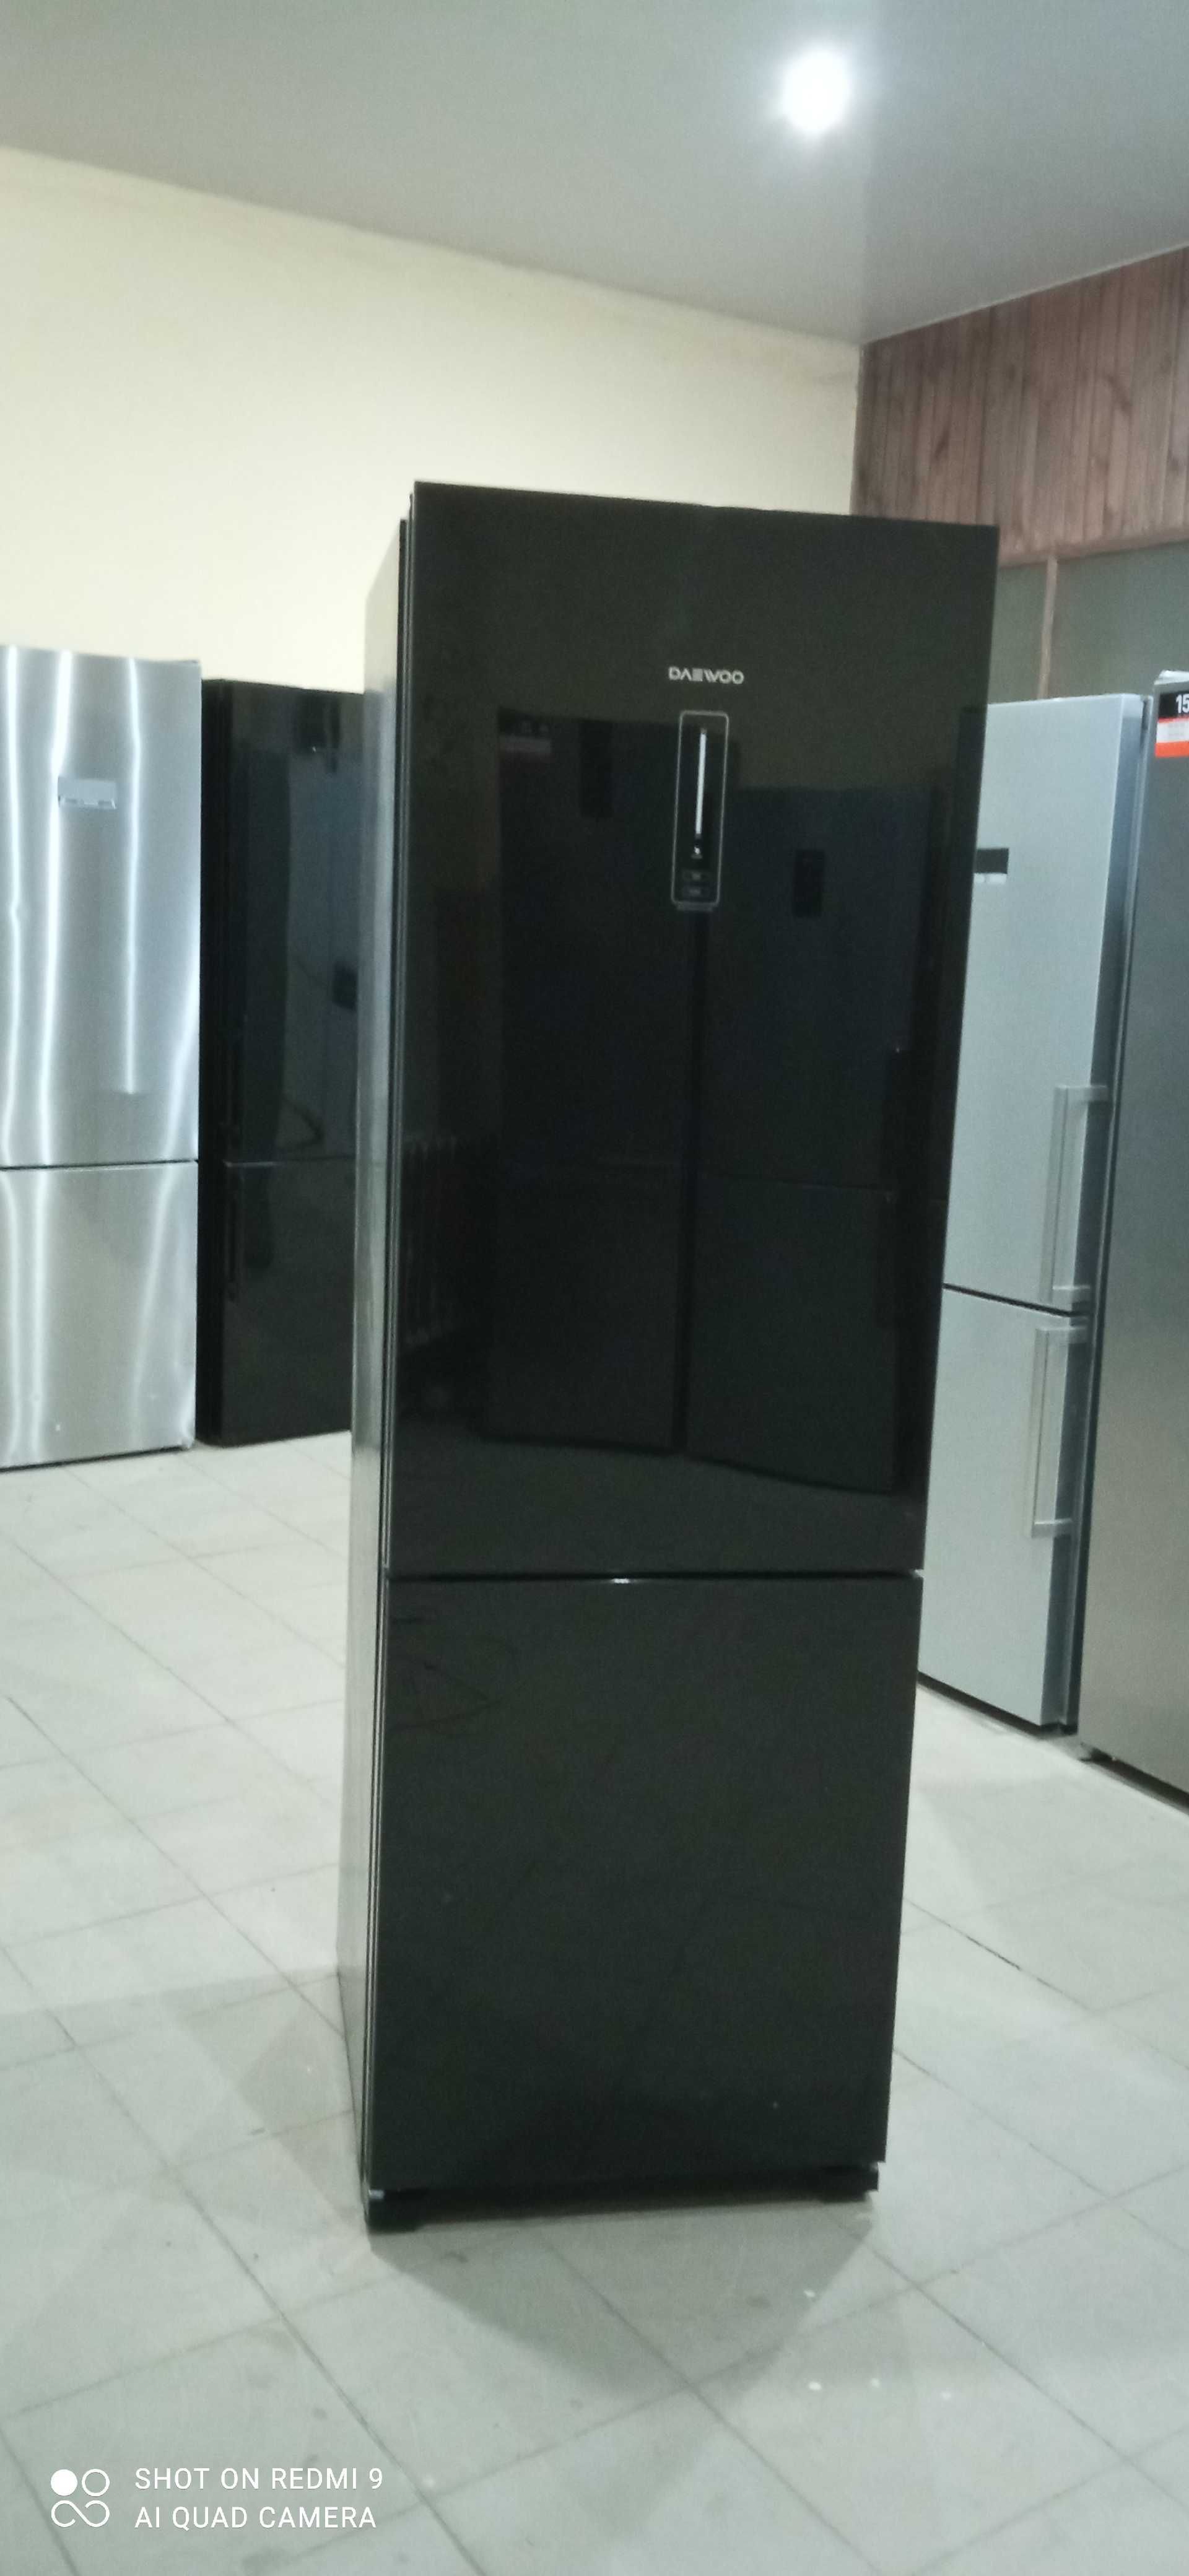 Б/У холодильник з скляними дверима DAEWOO RN-t405pnb